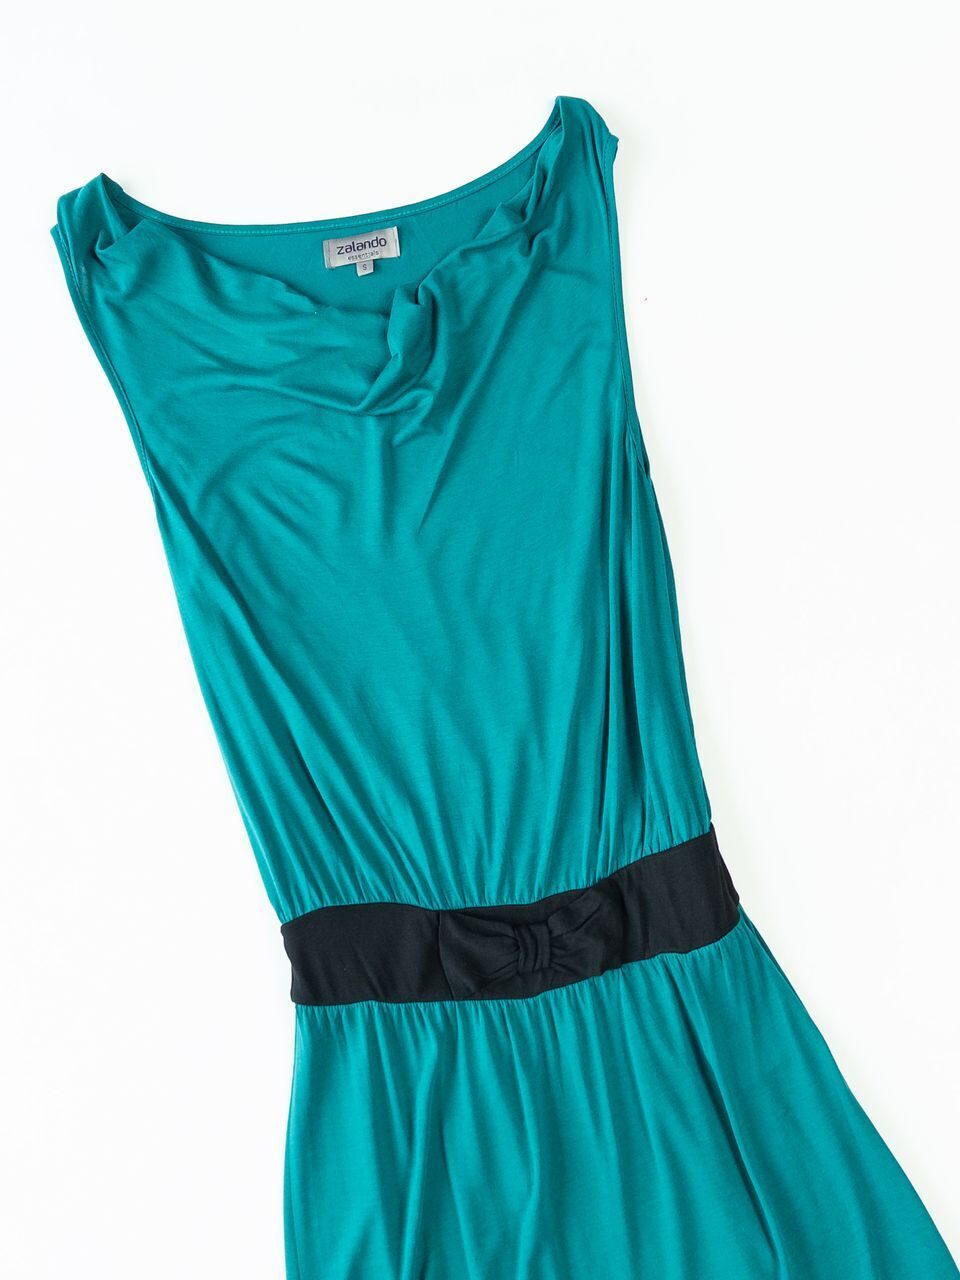 Платье цвет темно-зеленый размер EUR S (rus 42) zalando